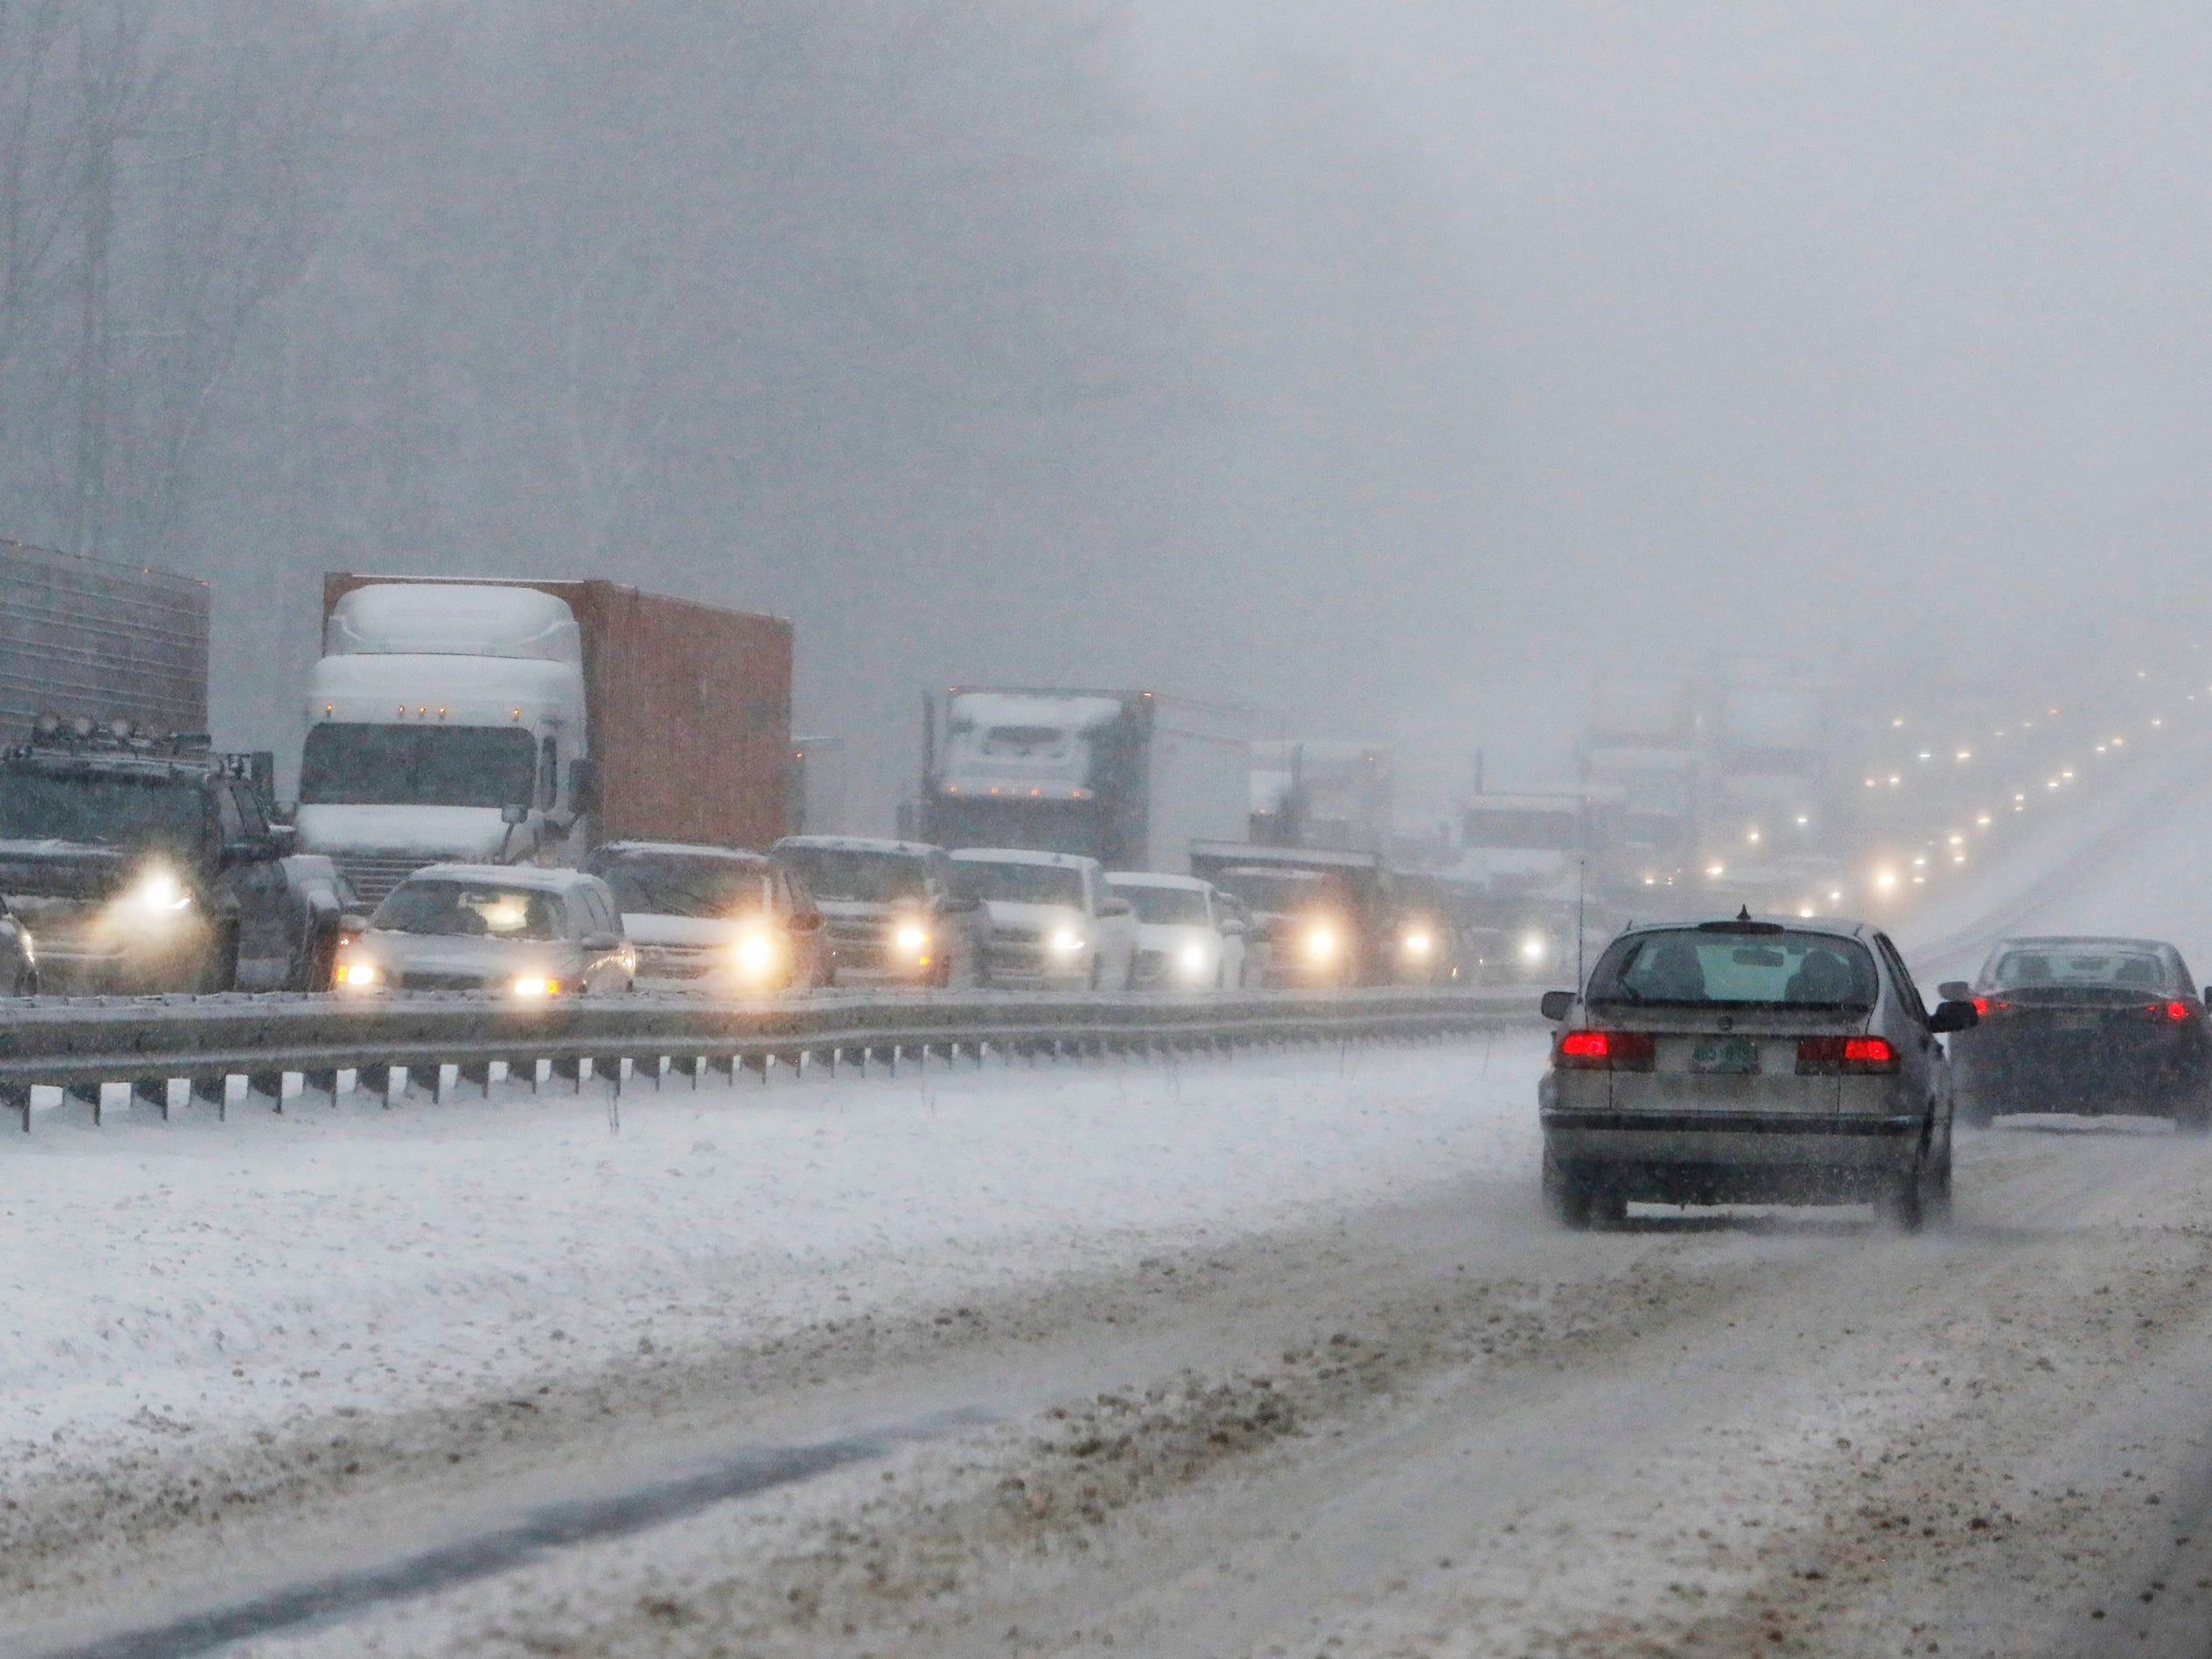 EVは真冬の交通渋滞でも大丈夫…14時間の渋滞を経験したテスラユーザーがブログで報告